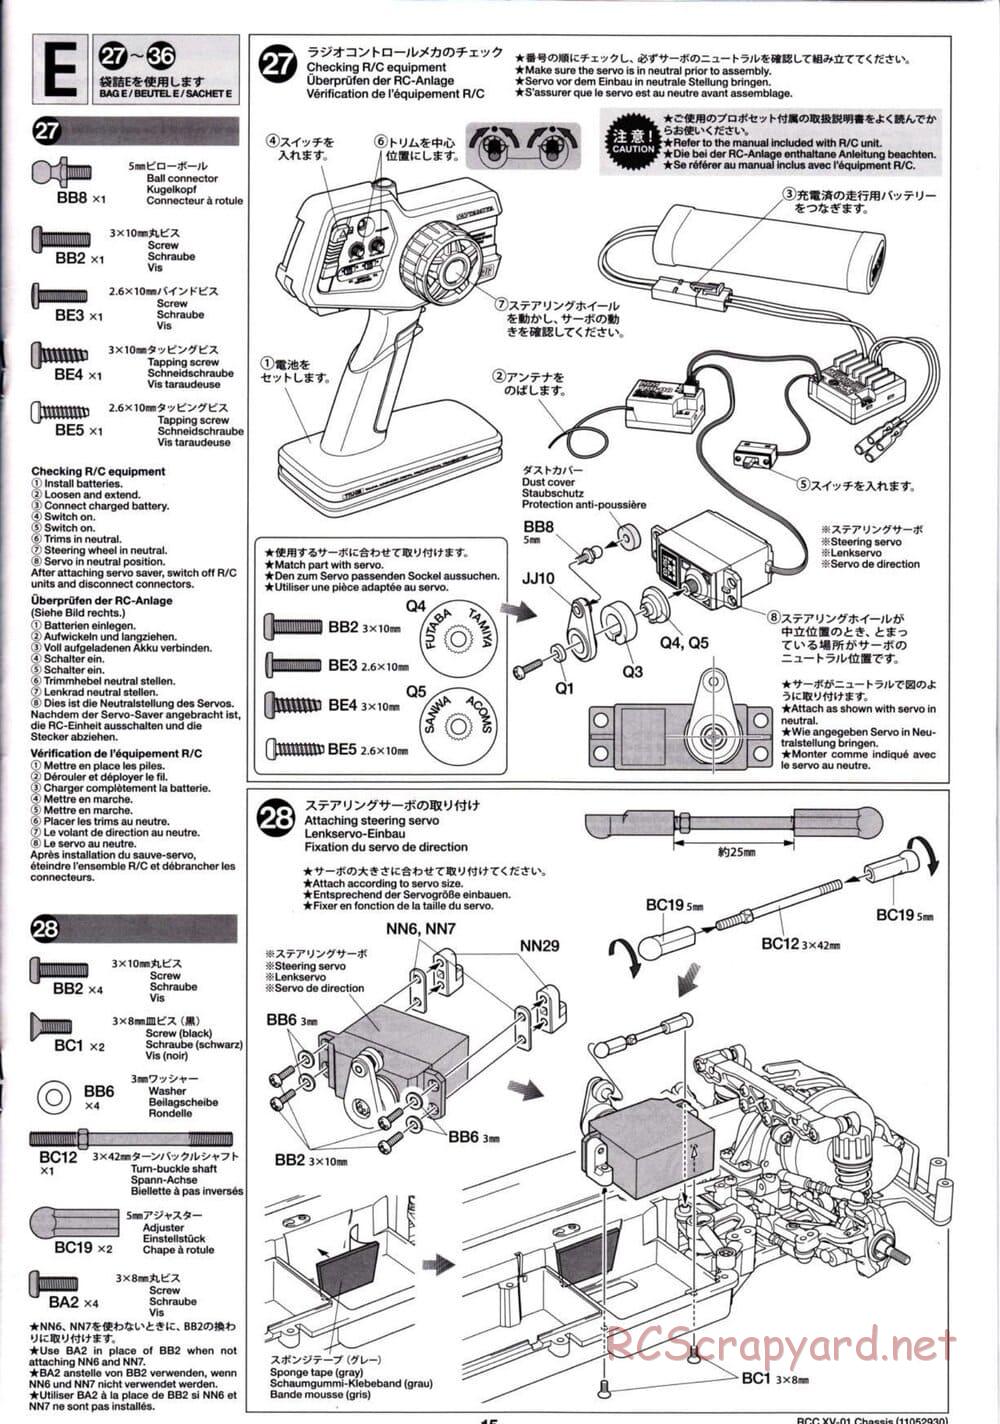 Tamiya - XV-01 Chassis - Manual - Page 15